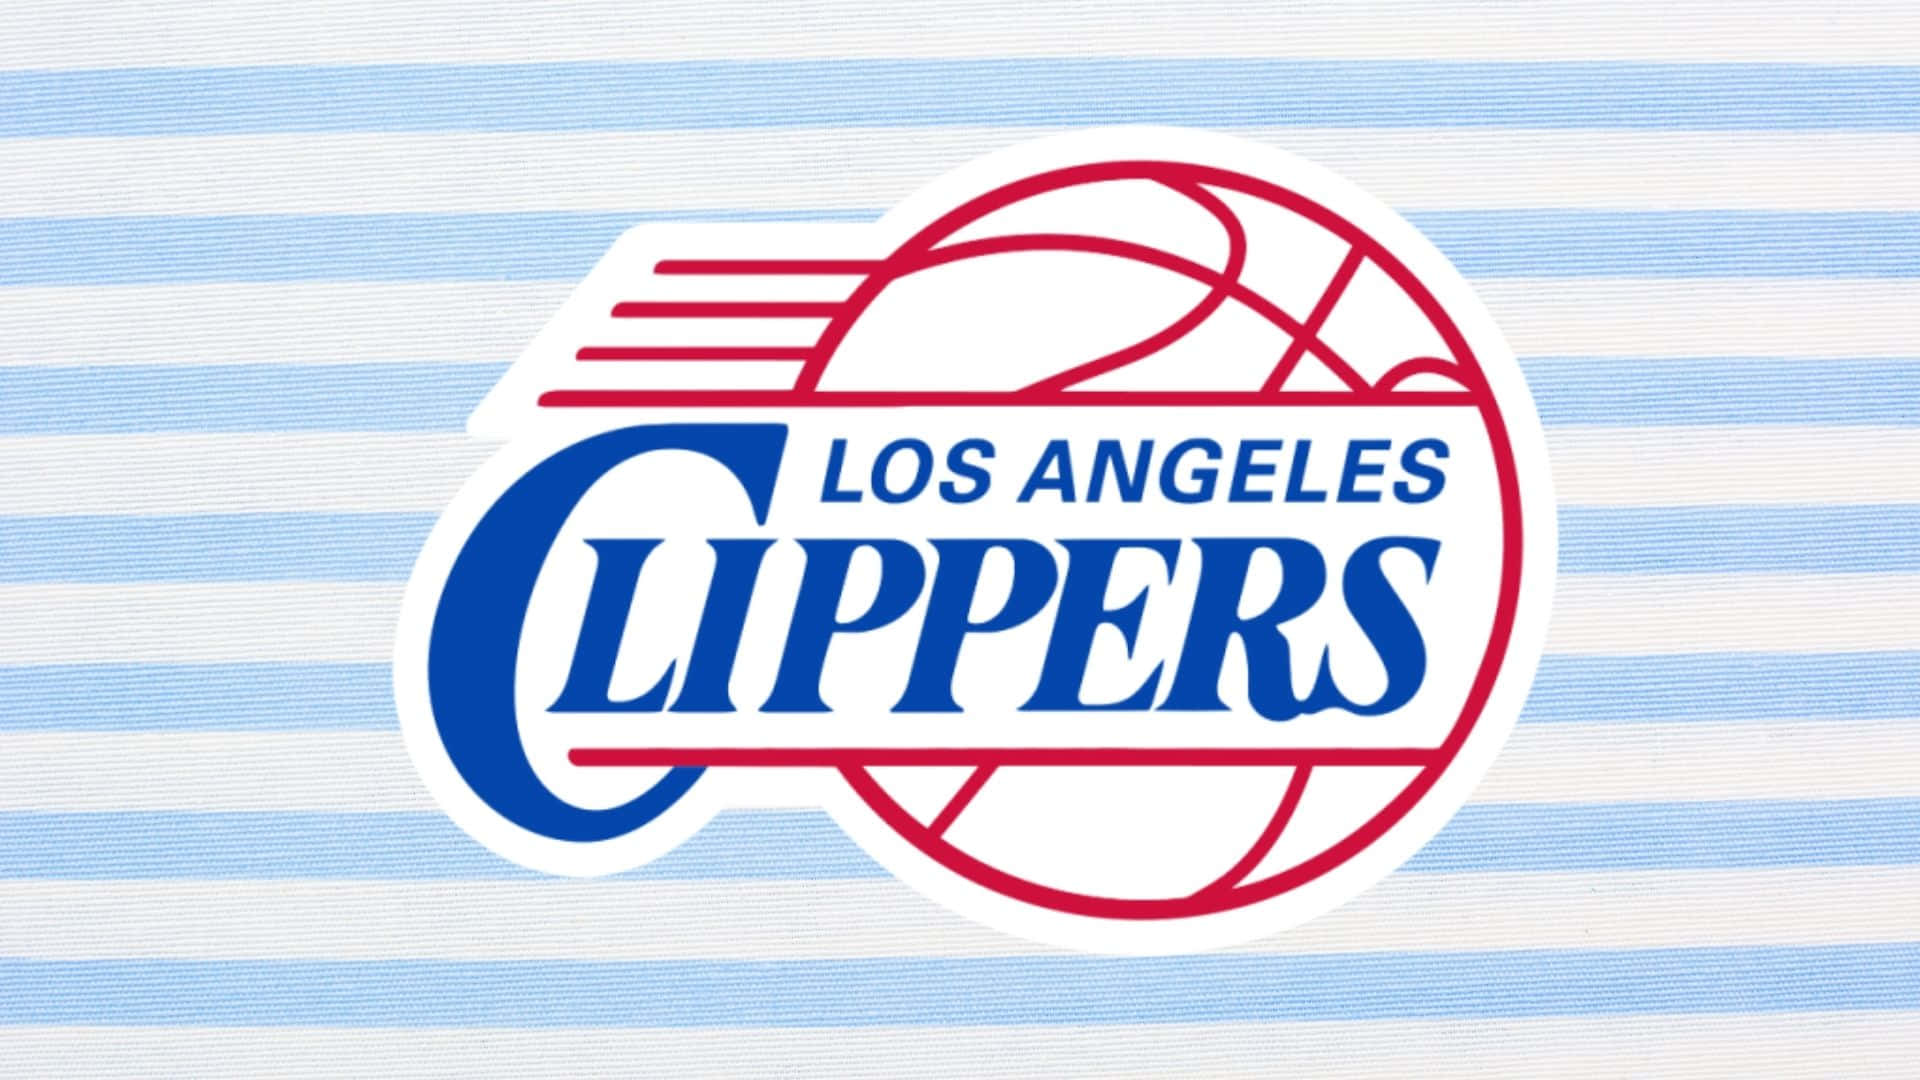 Flyghögt Med La Clippers. Wallpaper